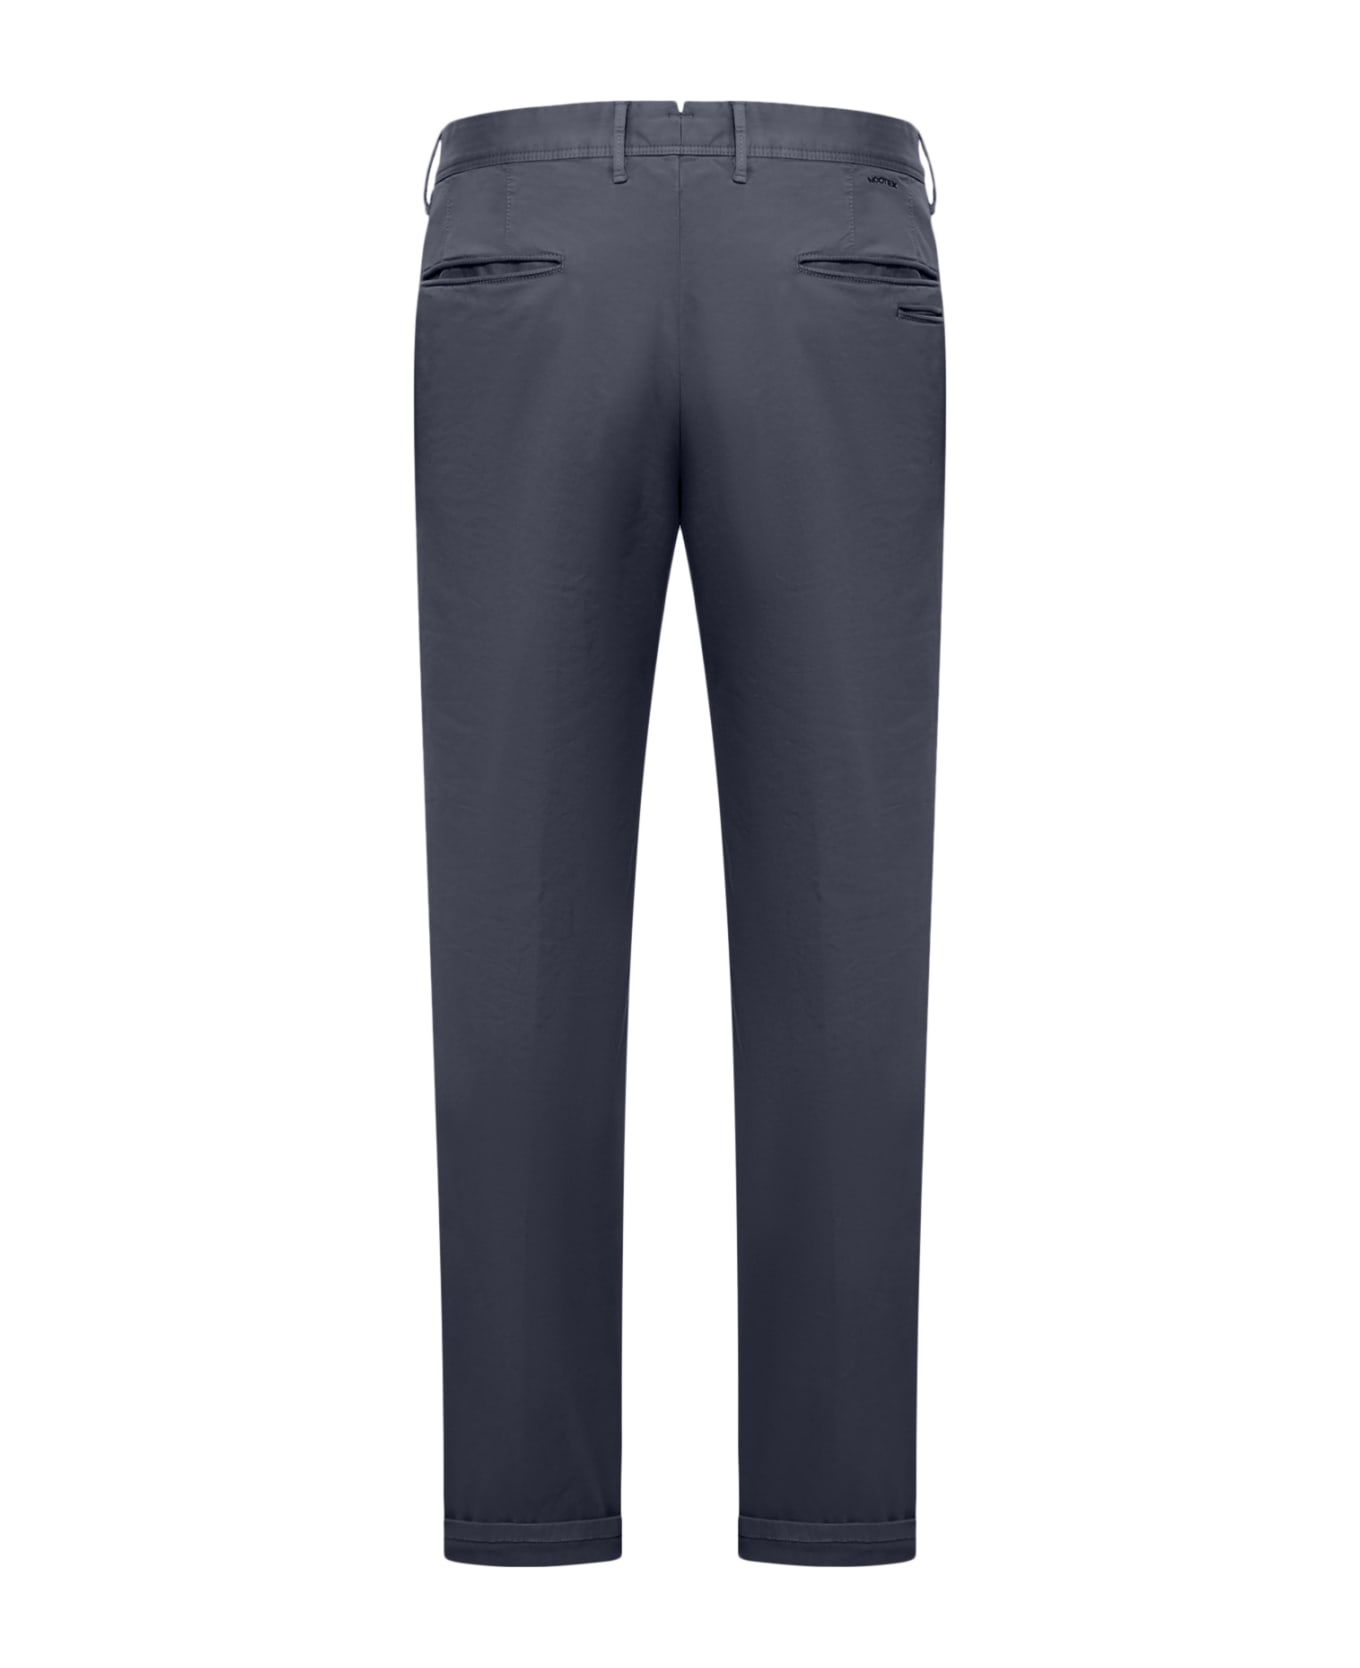 Incotex Jeans Slacks - Blue Navy